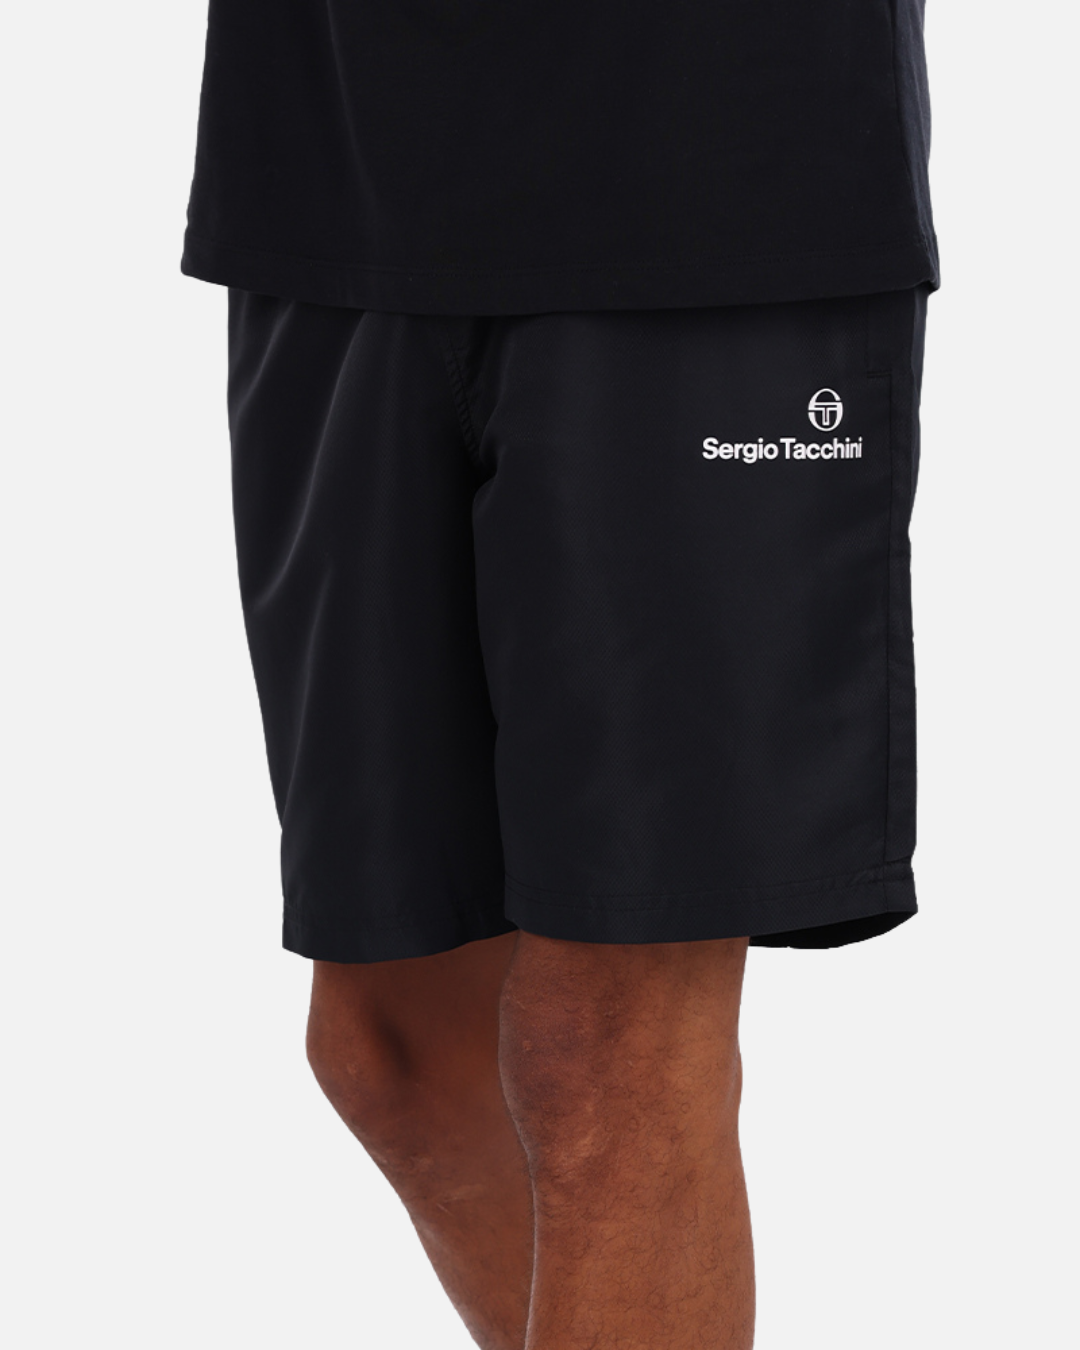 Sergio Tacchini Plug-In-Shorts – Schwarz/Blanc/Vert